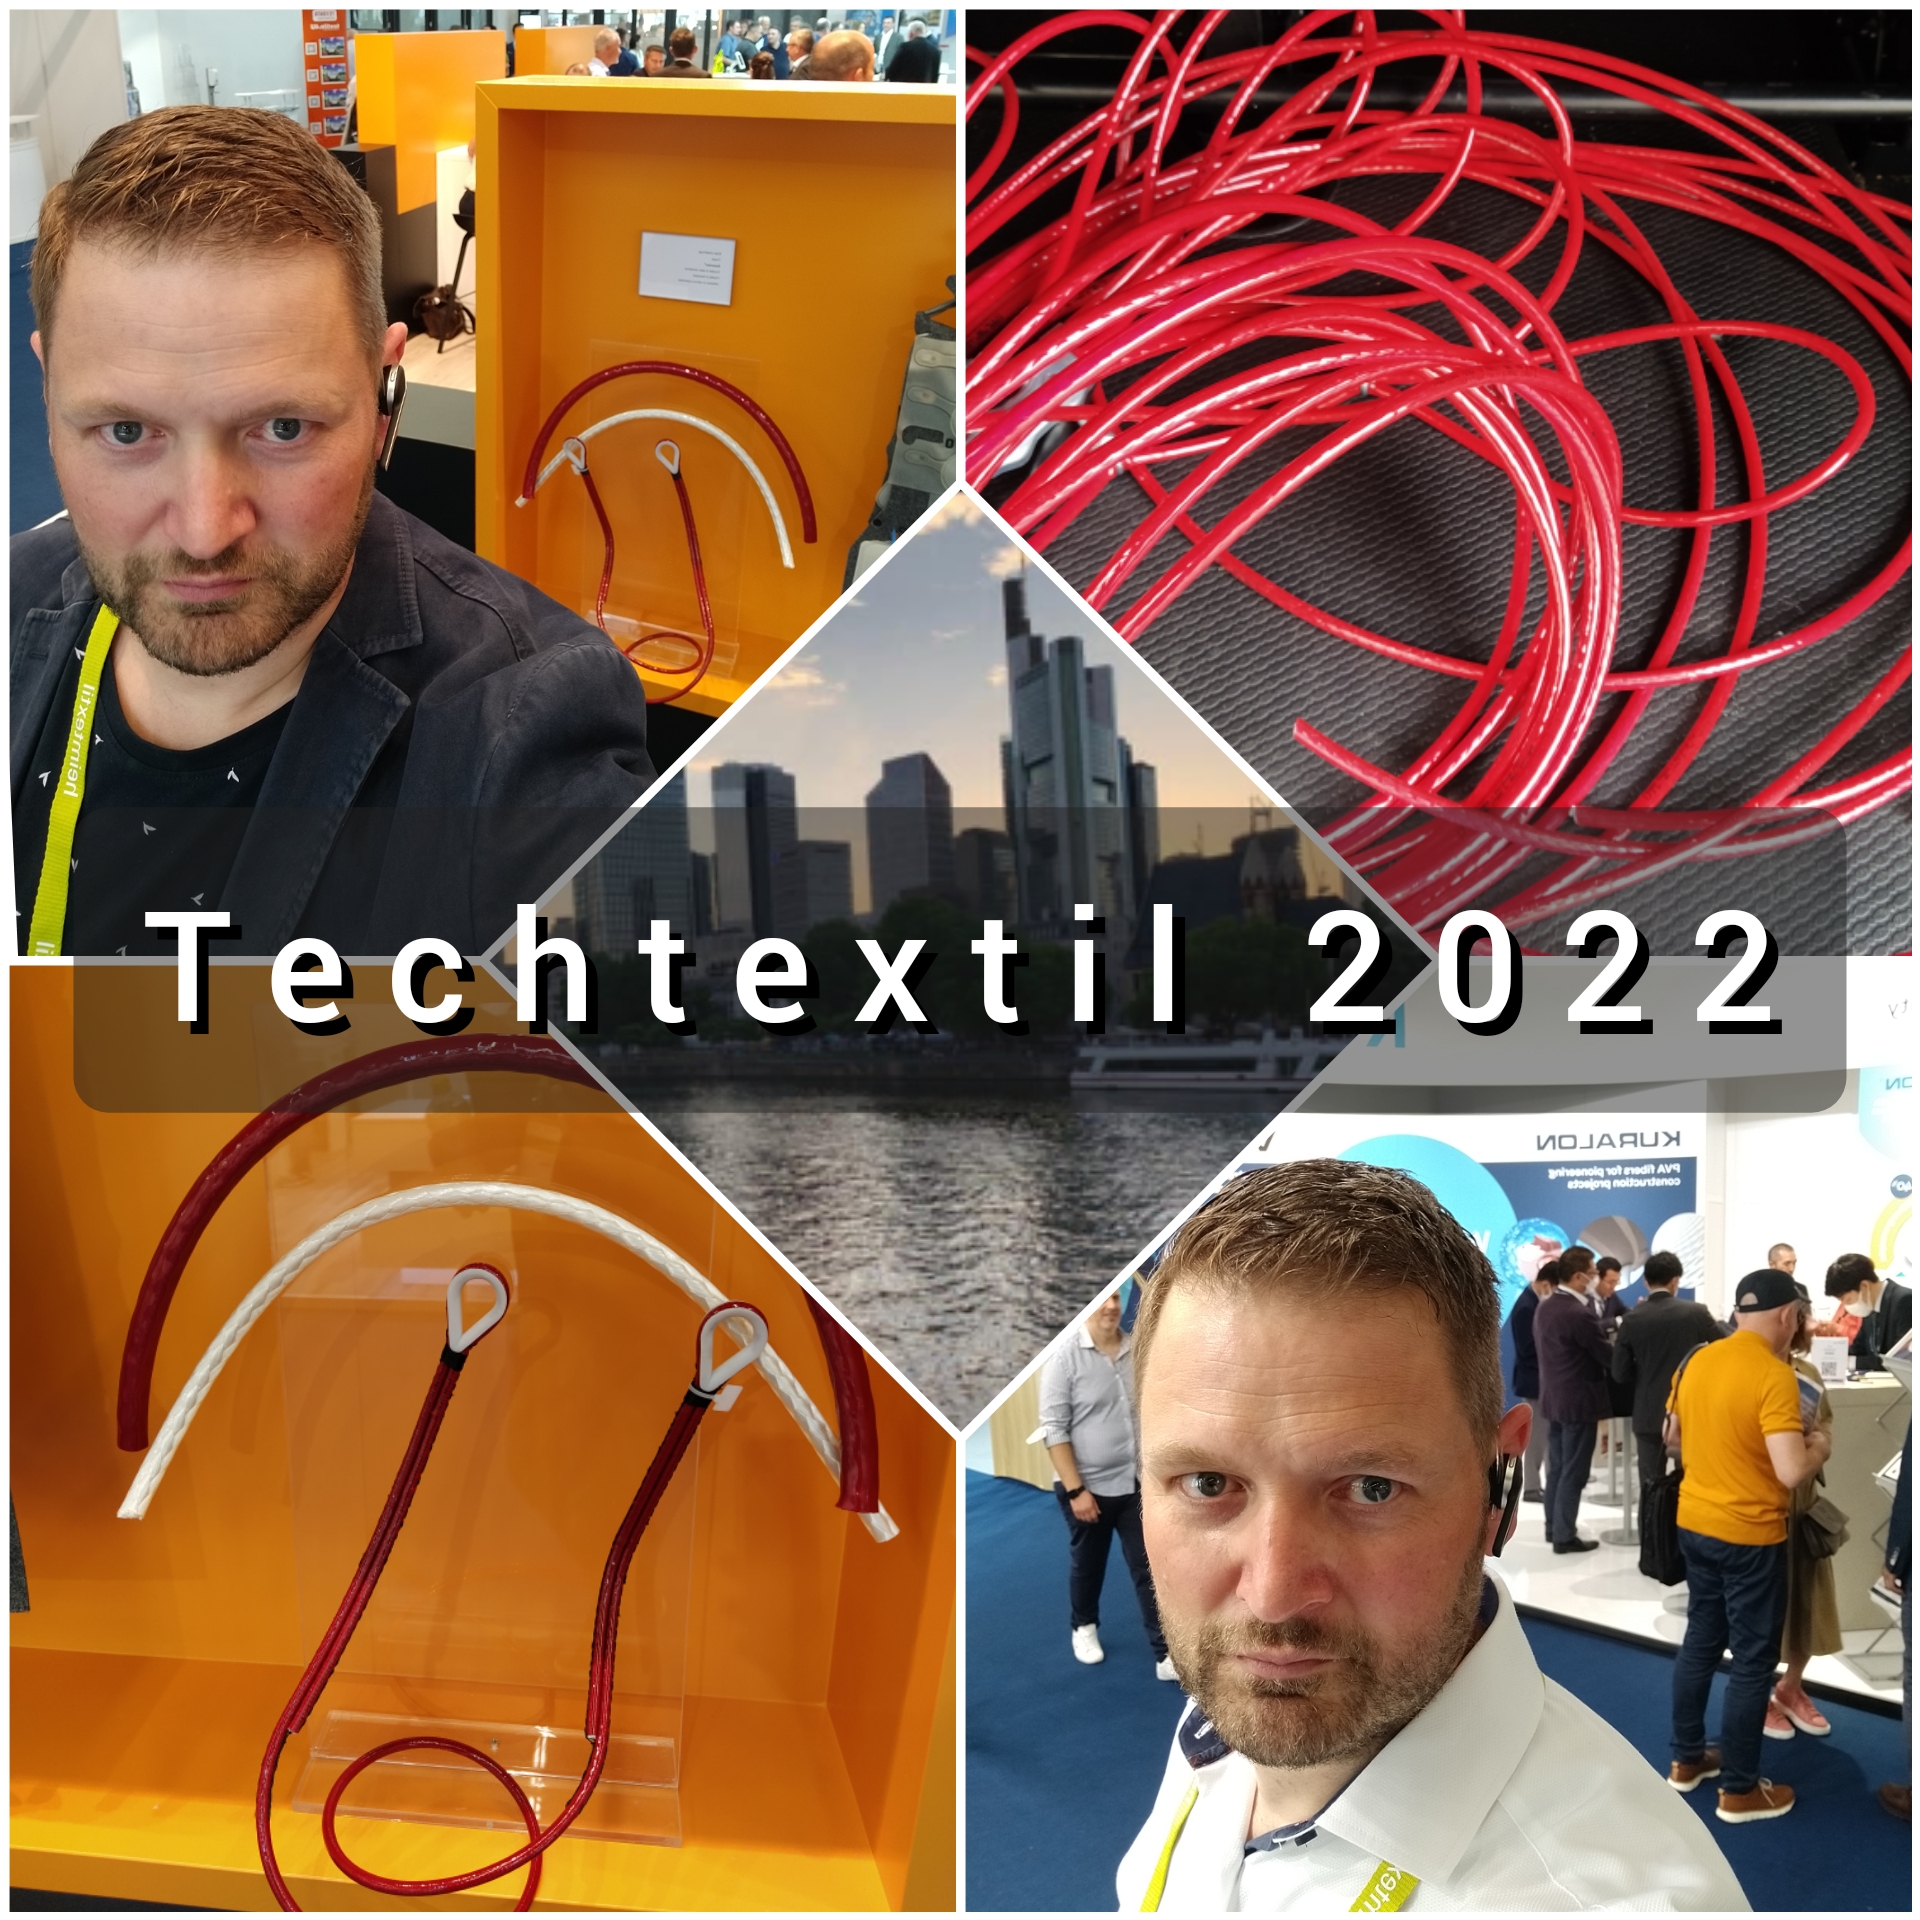 Techtextil 2022